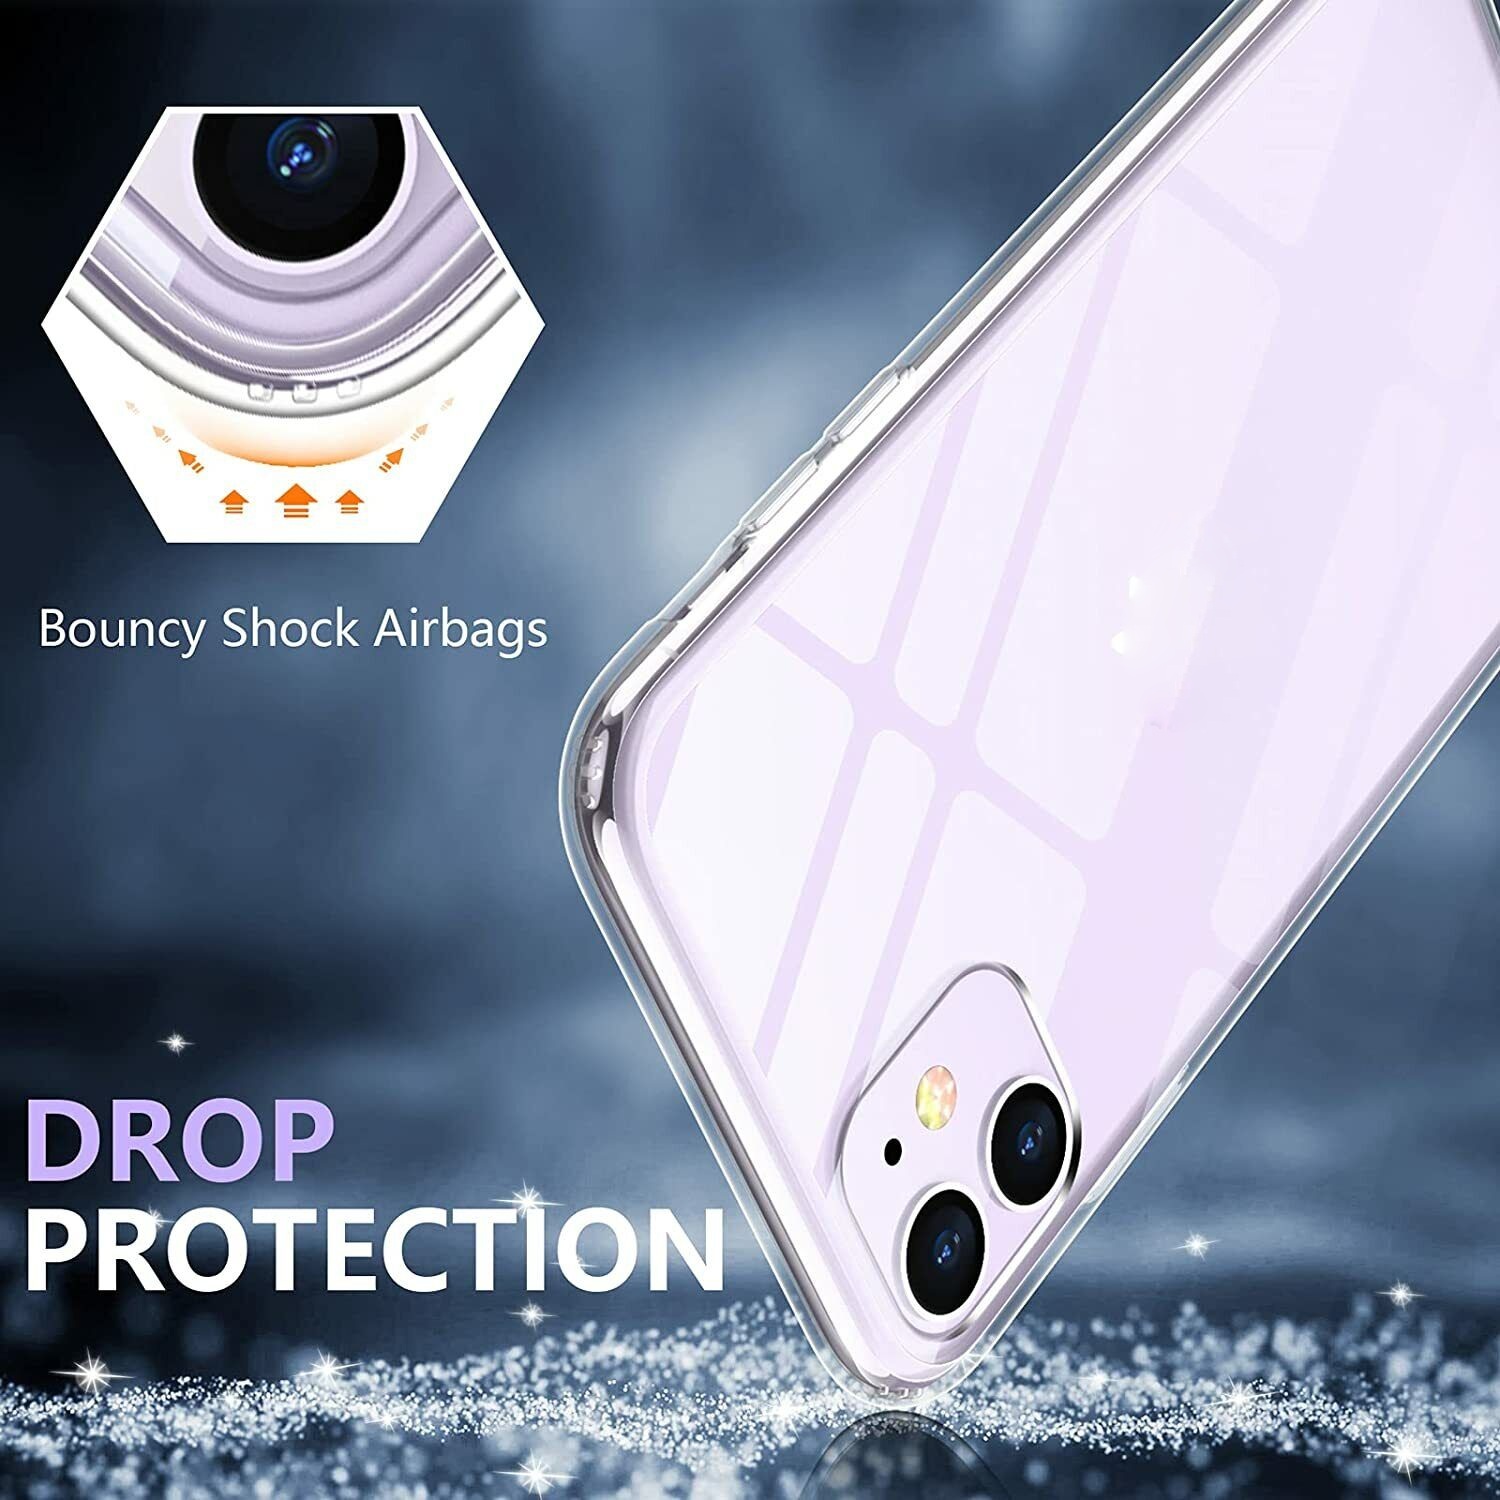 Ốp lưng chống sốc trong suốt cho iPhone 11 hiệu Memumi Glitter siêu mỏng 1.5mm độ trong tuyệt đối, chống trầy xước, chống ố vàng, tản nhiệt tốt